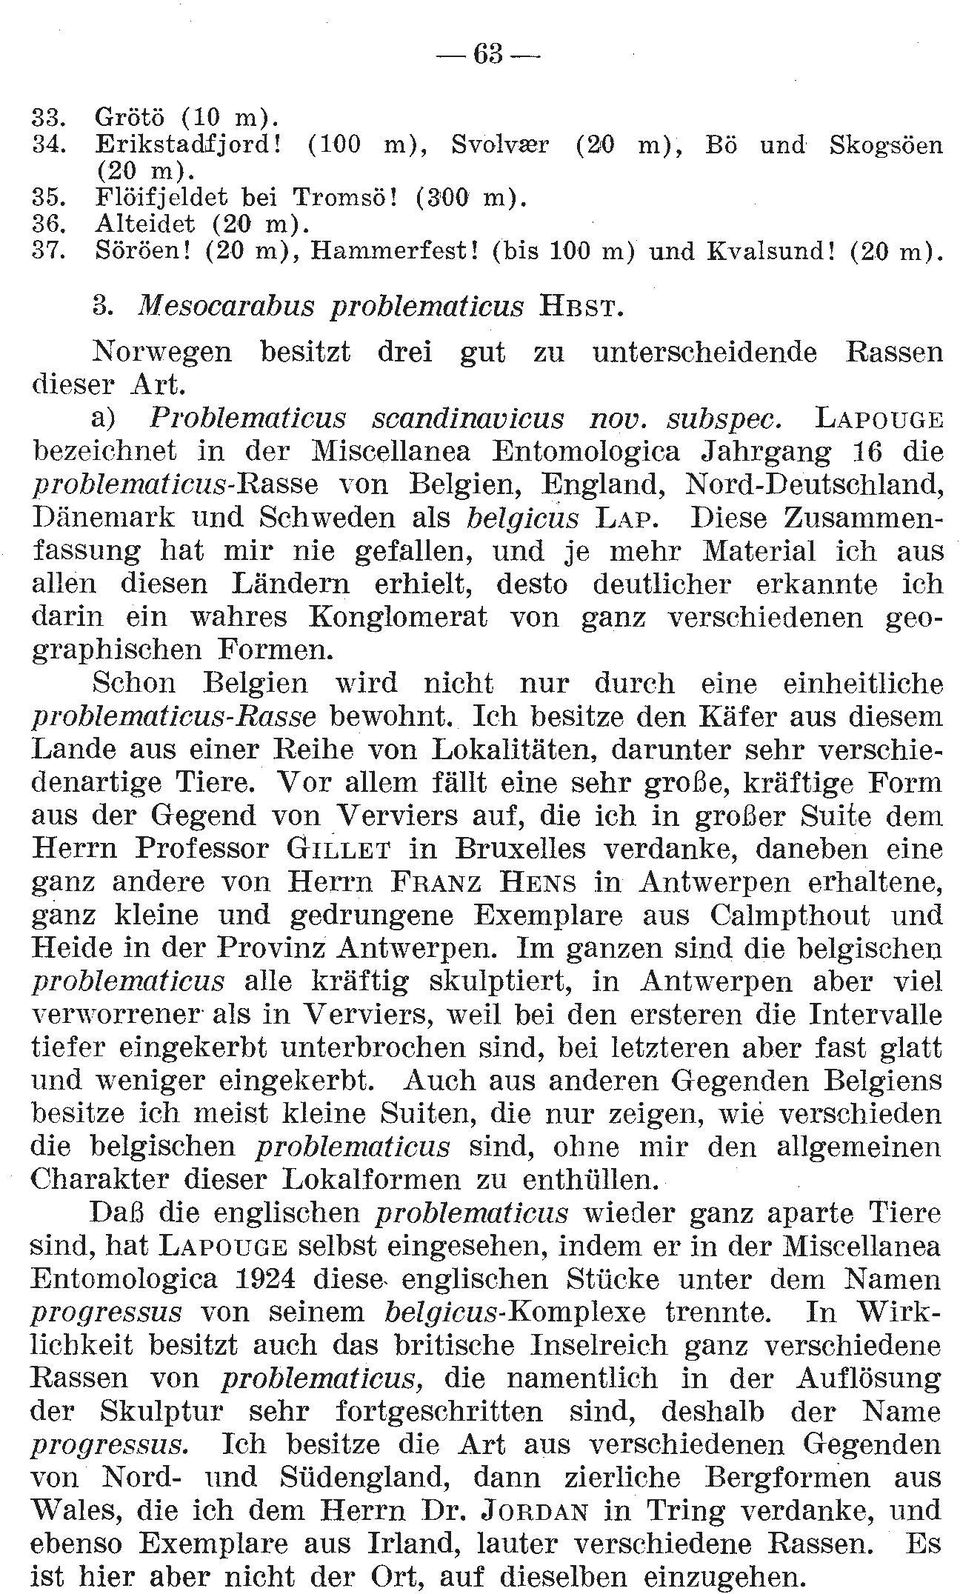 LAPOUGE bezeichnet in der Miscellanea Entomologica Jahrgang 16 die problematicus-rasse von Belgien, England, Nord-Deutschland, Danemark und Schweden als belgicus LAP.